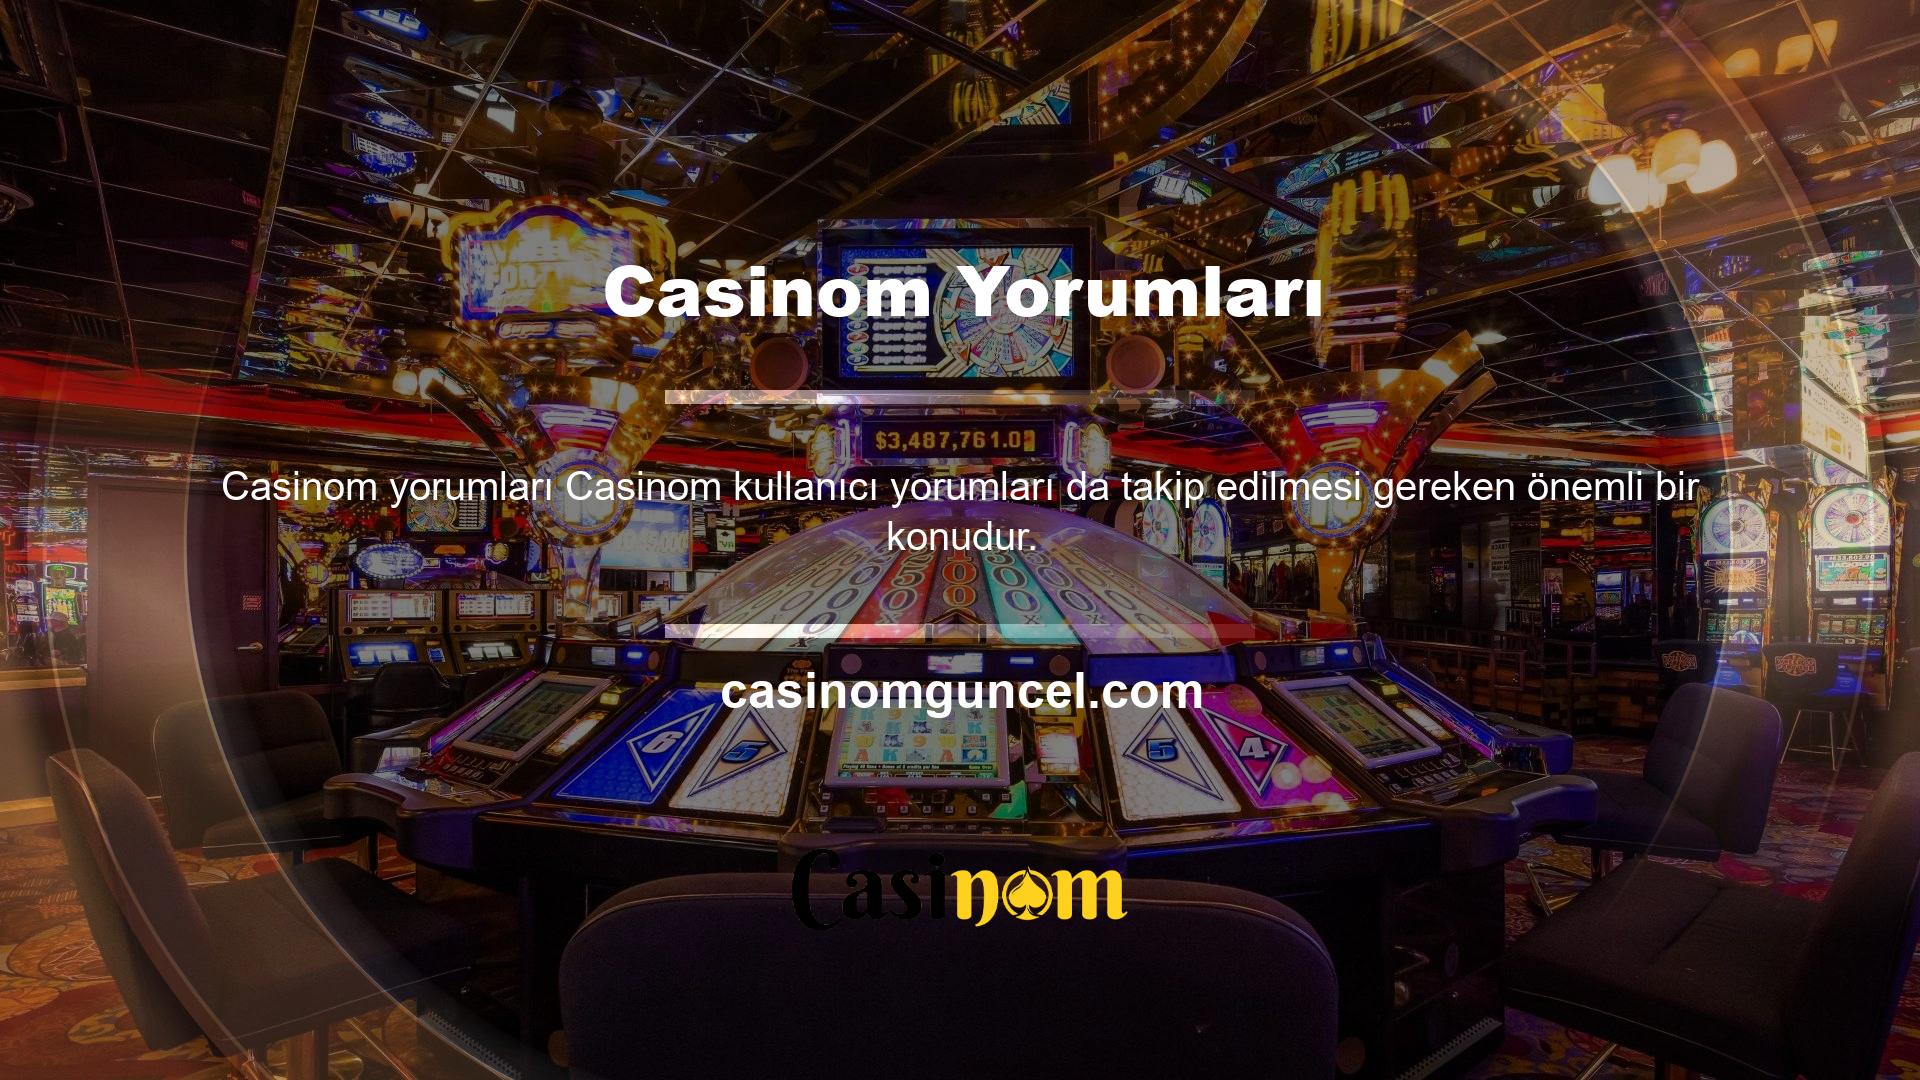 Canlı casino sitelerine bakarken bahisçilerden gelen şikayetler ve oyuncuların yorumları bizi Asit Sözlüğü gibi platformlara bakmaya yöneltti